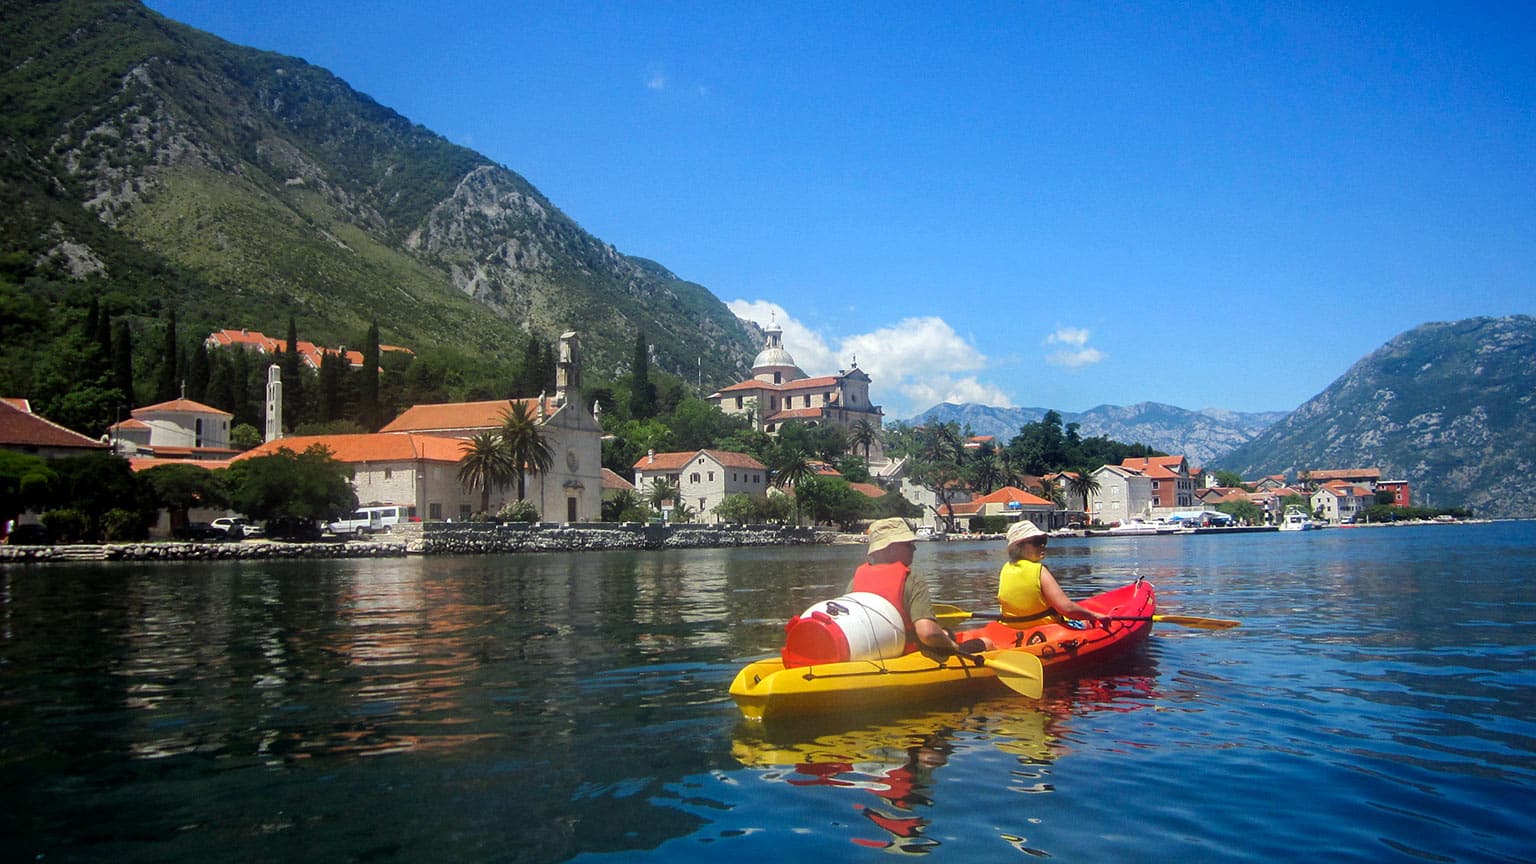 Balkans-Montenegro-Bay-of-Kotor-Mountains-Town-Kayakers-Matthew-Ford